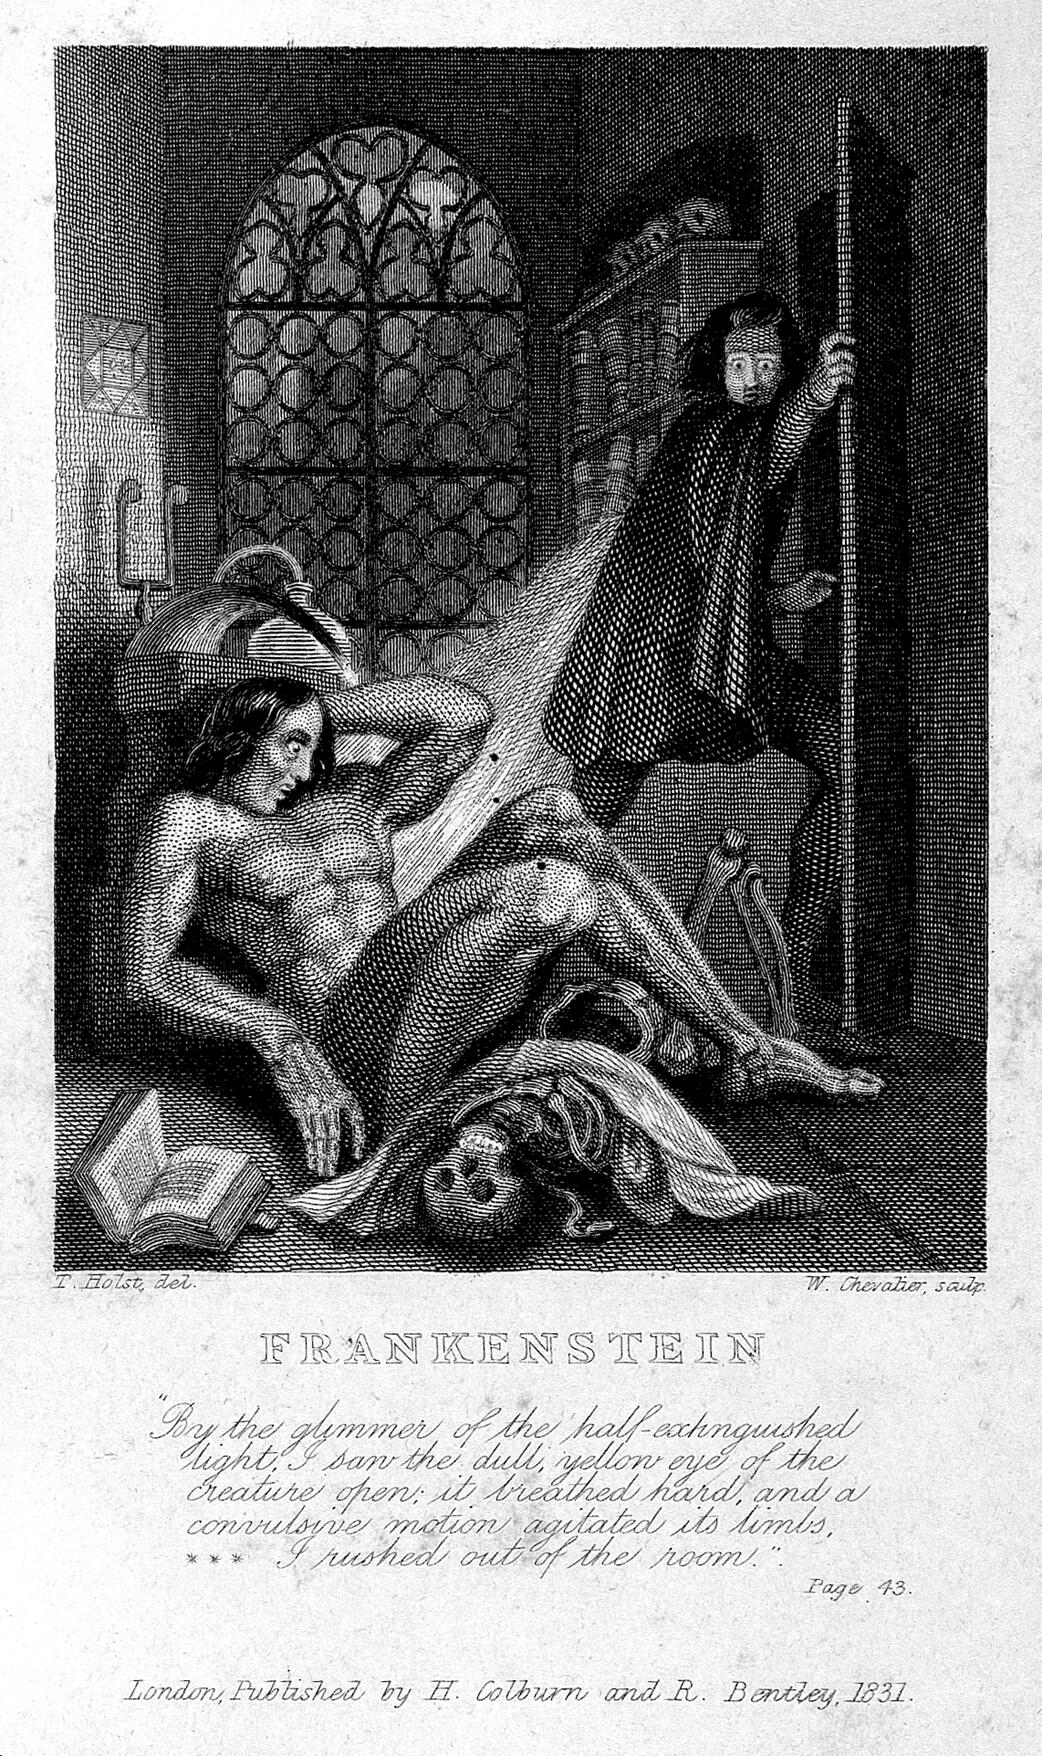 Frankenstein observando os primeiros movimentos de sua criatura. Gravura de W. Chevalier sobre Th. von Holst, 1831. Destaque como frontispício da edição de 1831 do romance de Shelley. <a href="http://wellcomeimages.org/indexplus/image/L0027125.html" target="_blank" rel="noopener noreferrer">Fonte: Wellcome Library</a>.